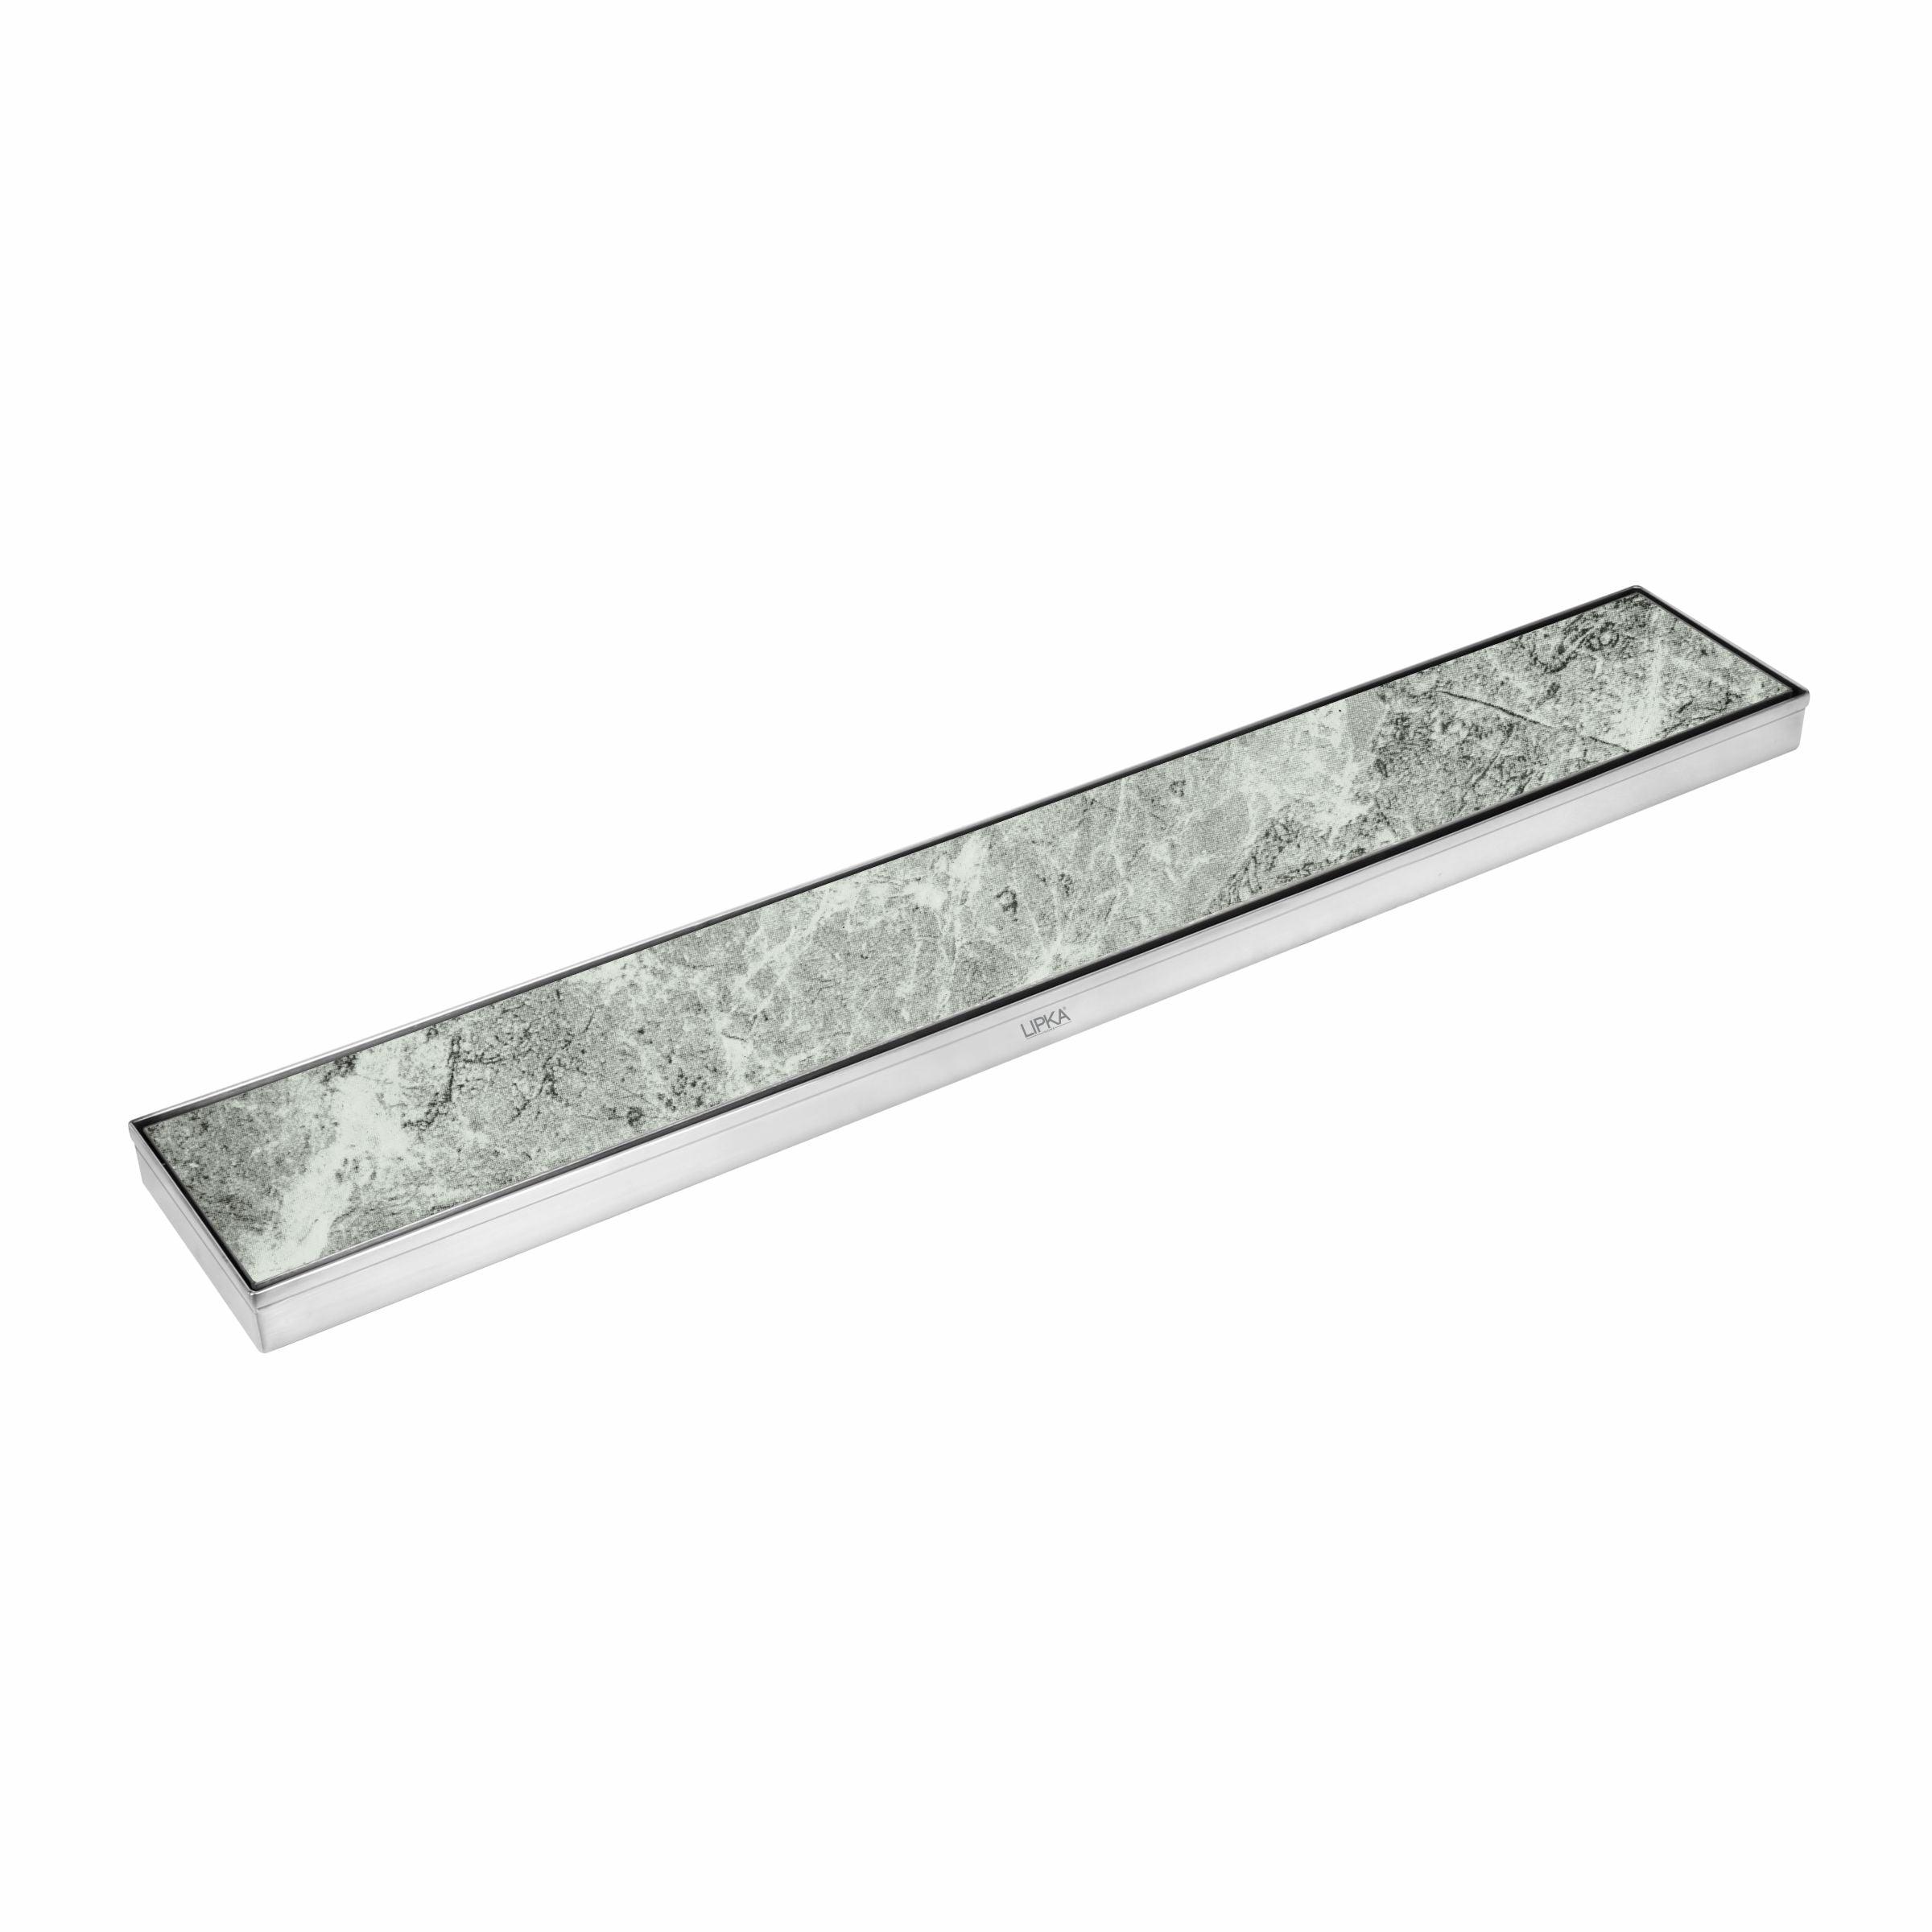 Tile Insert Shower Drain Channel (40 x 5 Inches) - LIPKA - Lipka Home